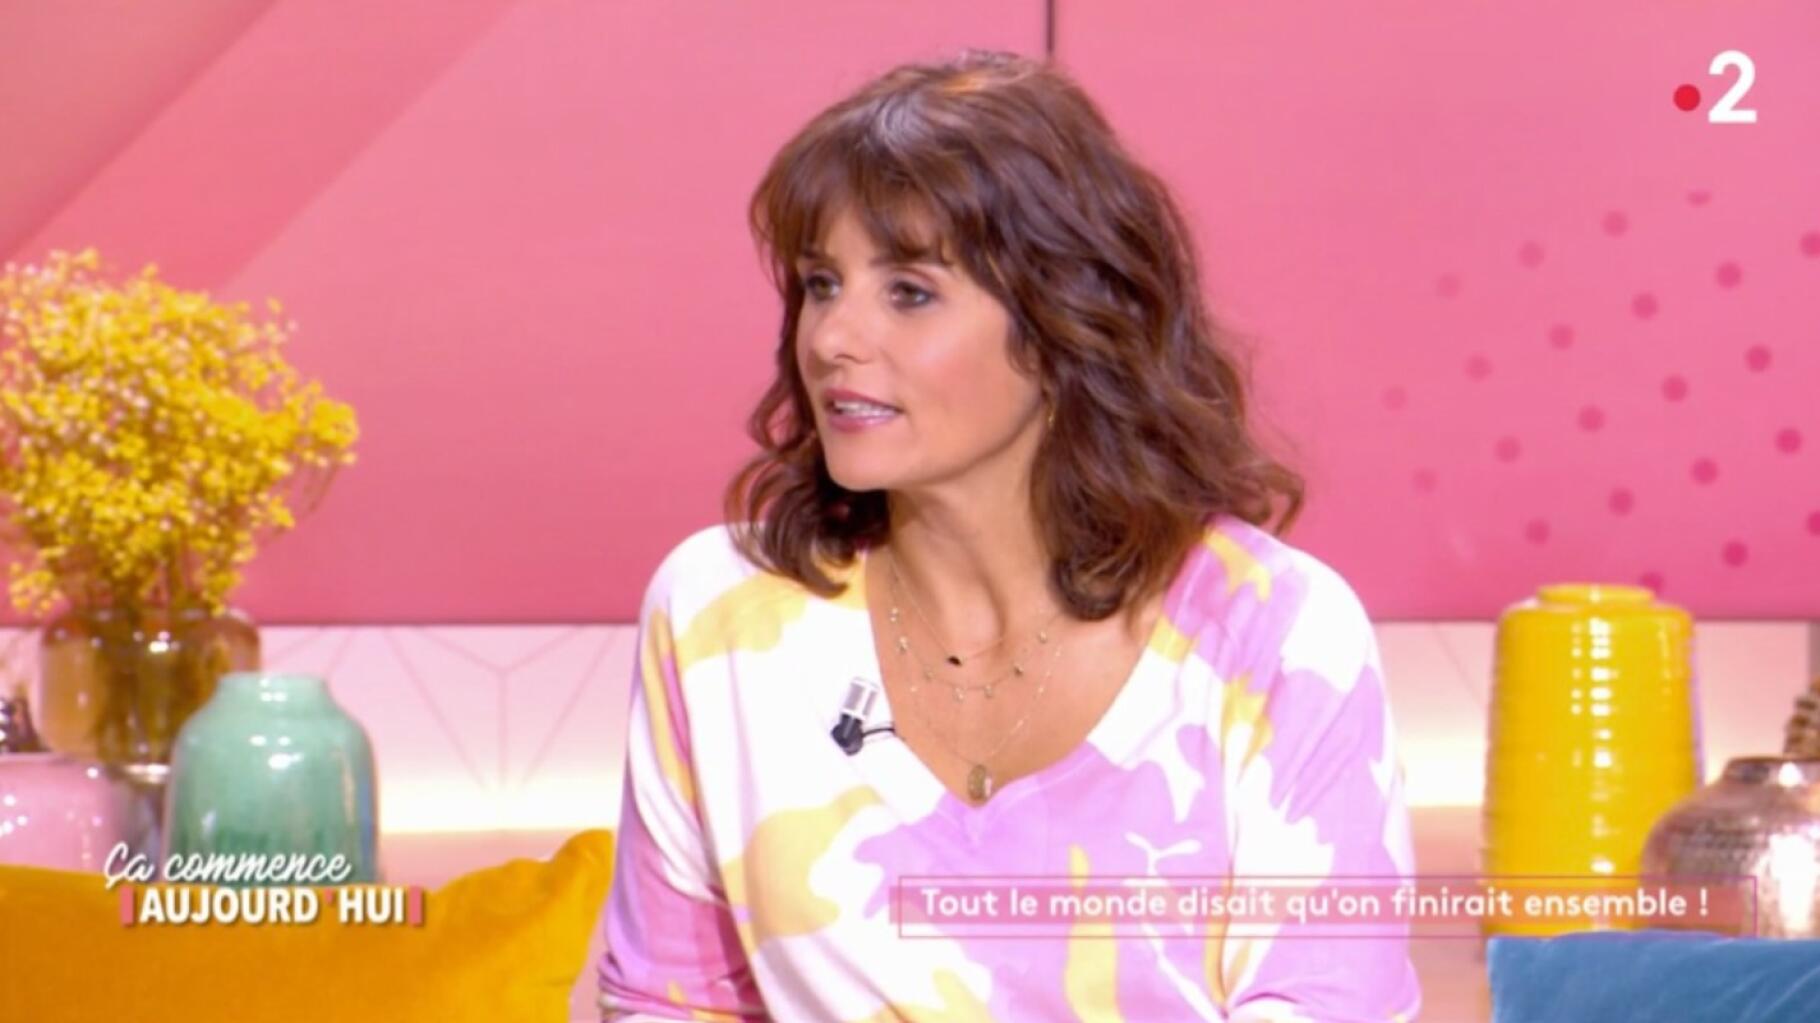 Faustine Pollert is “de favoriete tv-persoonlijkheid van Frankrijk”, een primeur voor een vrouw